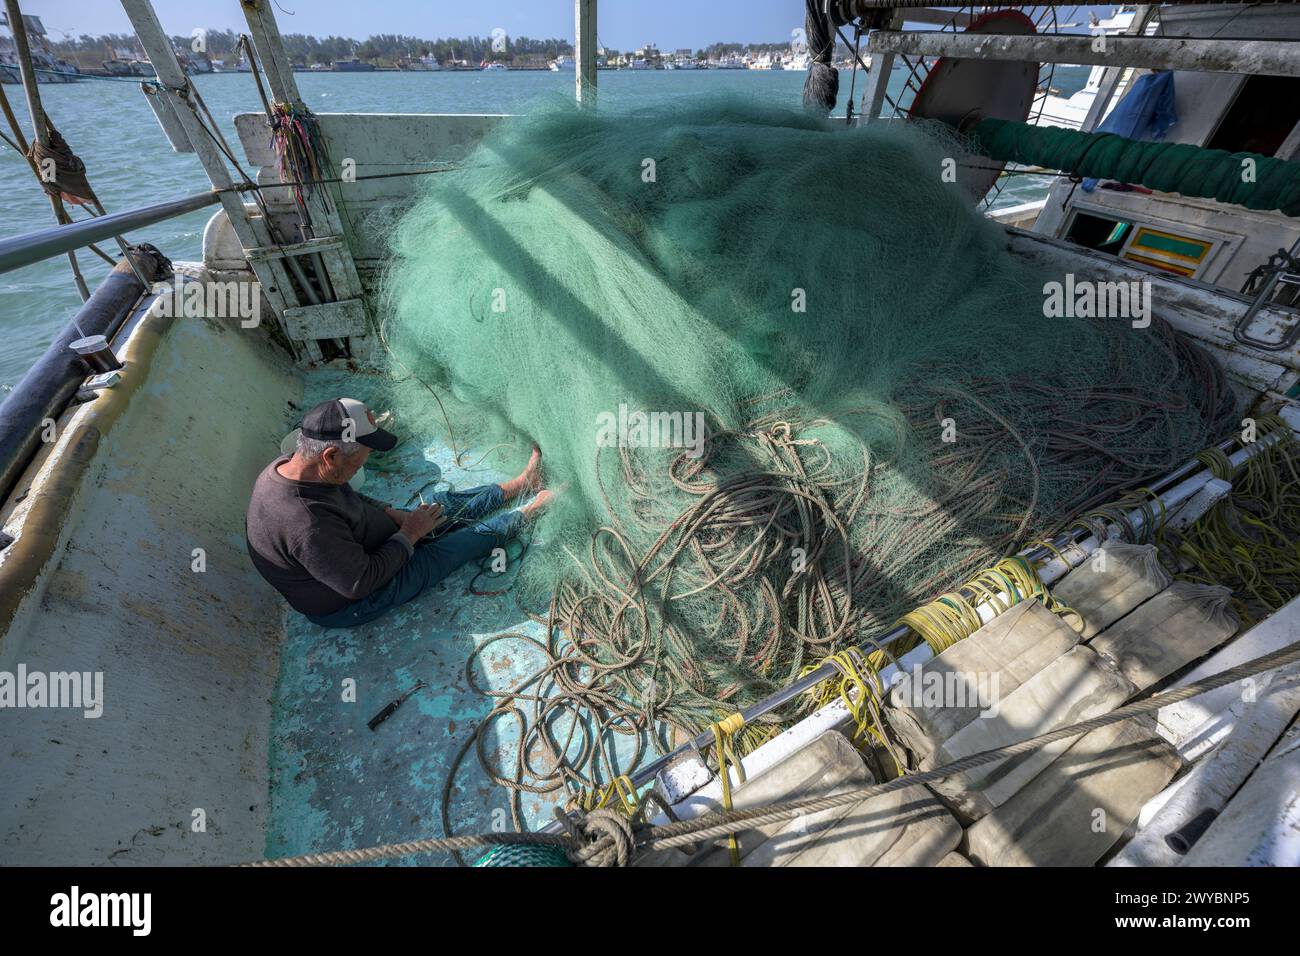 Un pescatore ripara diligentemente le reti da pesca su un ponte di barche, mostrando la vita quotidiana del lavoro marittimo Foto Stock